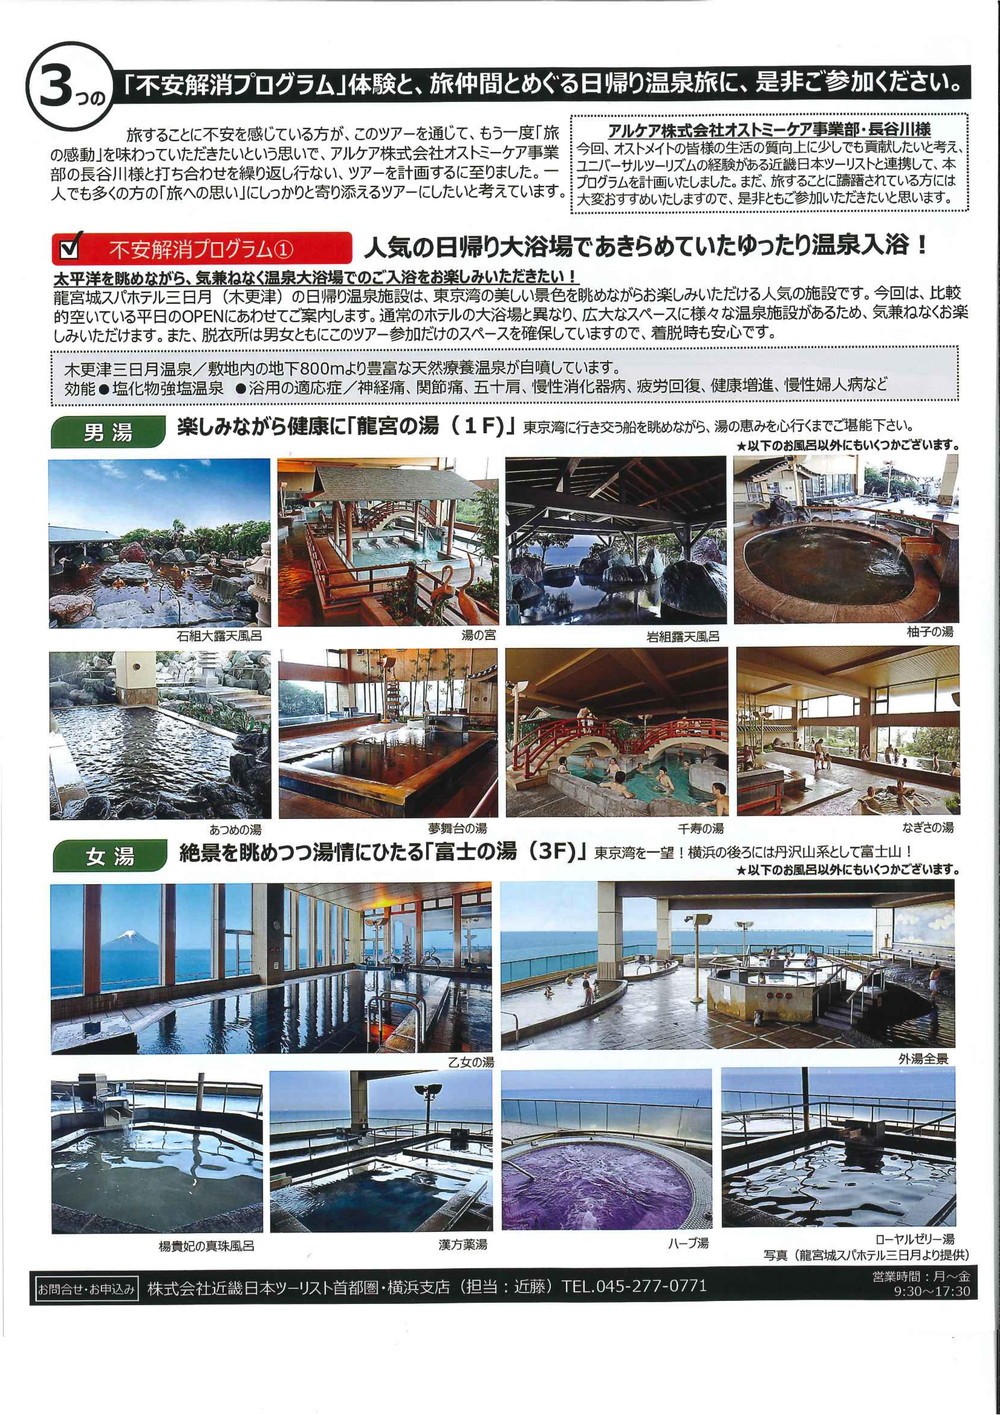 アルケア社 近畿日本ツーリストによる工場見学 温泉入浴体験会のご案内 Part 2